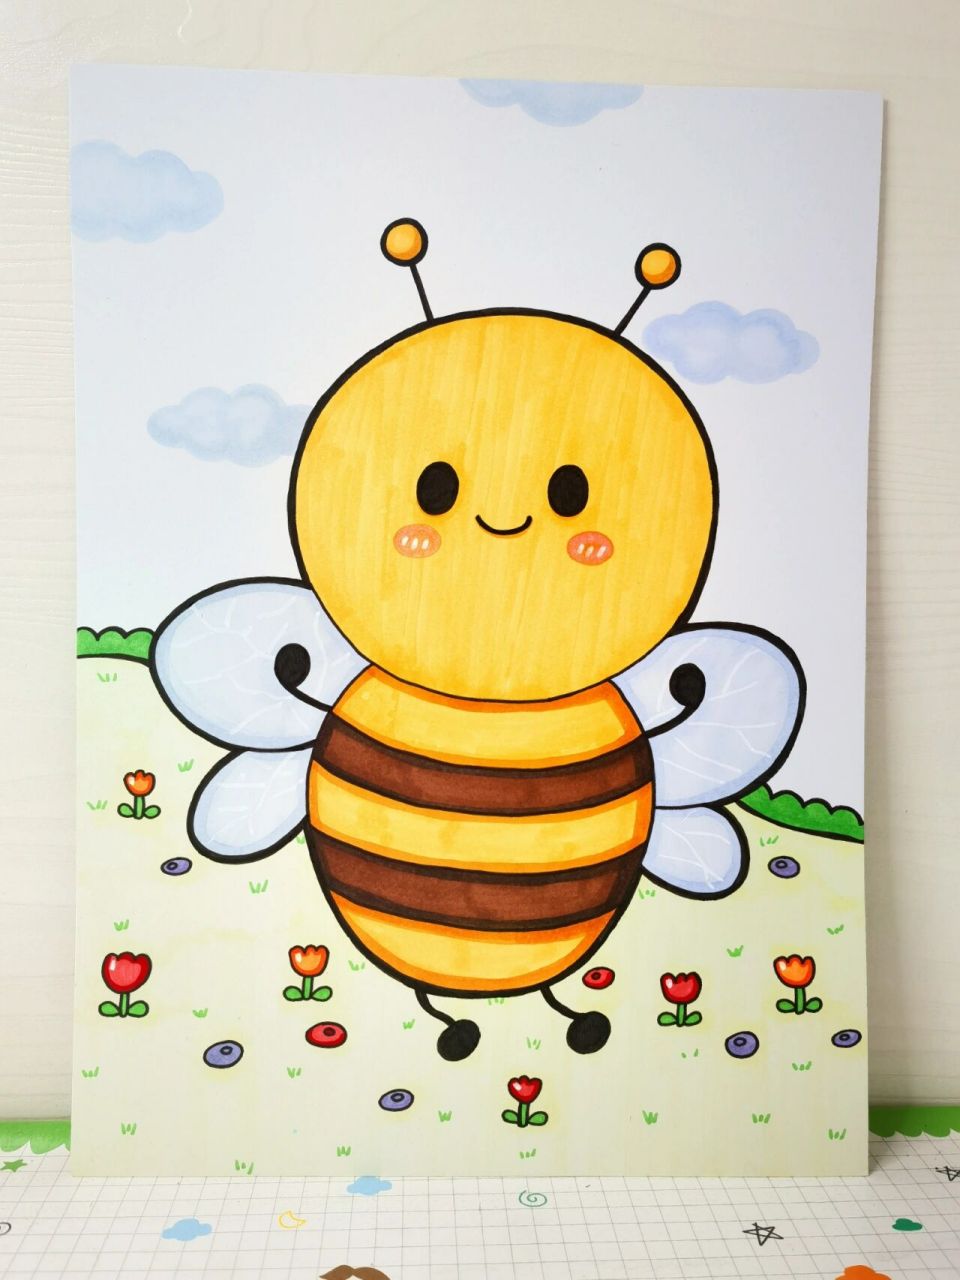 蜜蜂的图片简笔画彩色图片